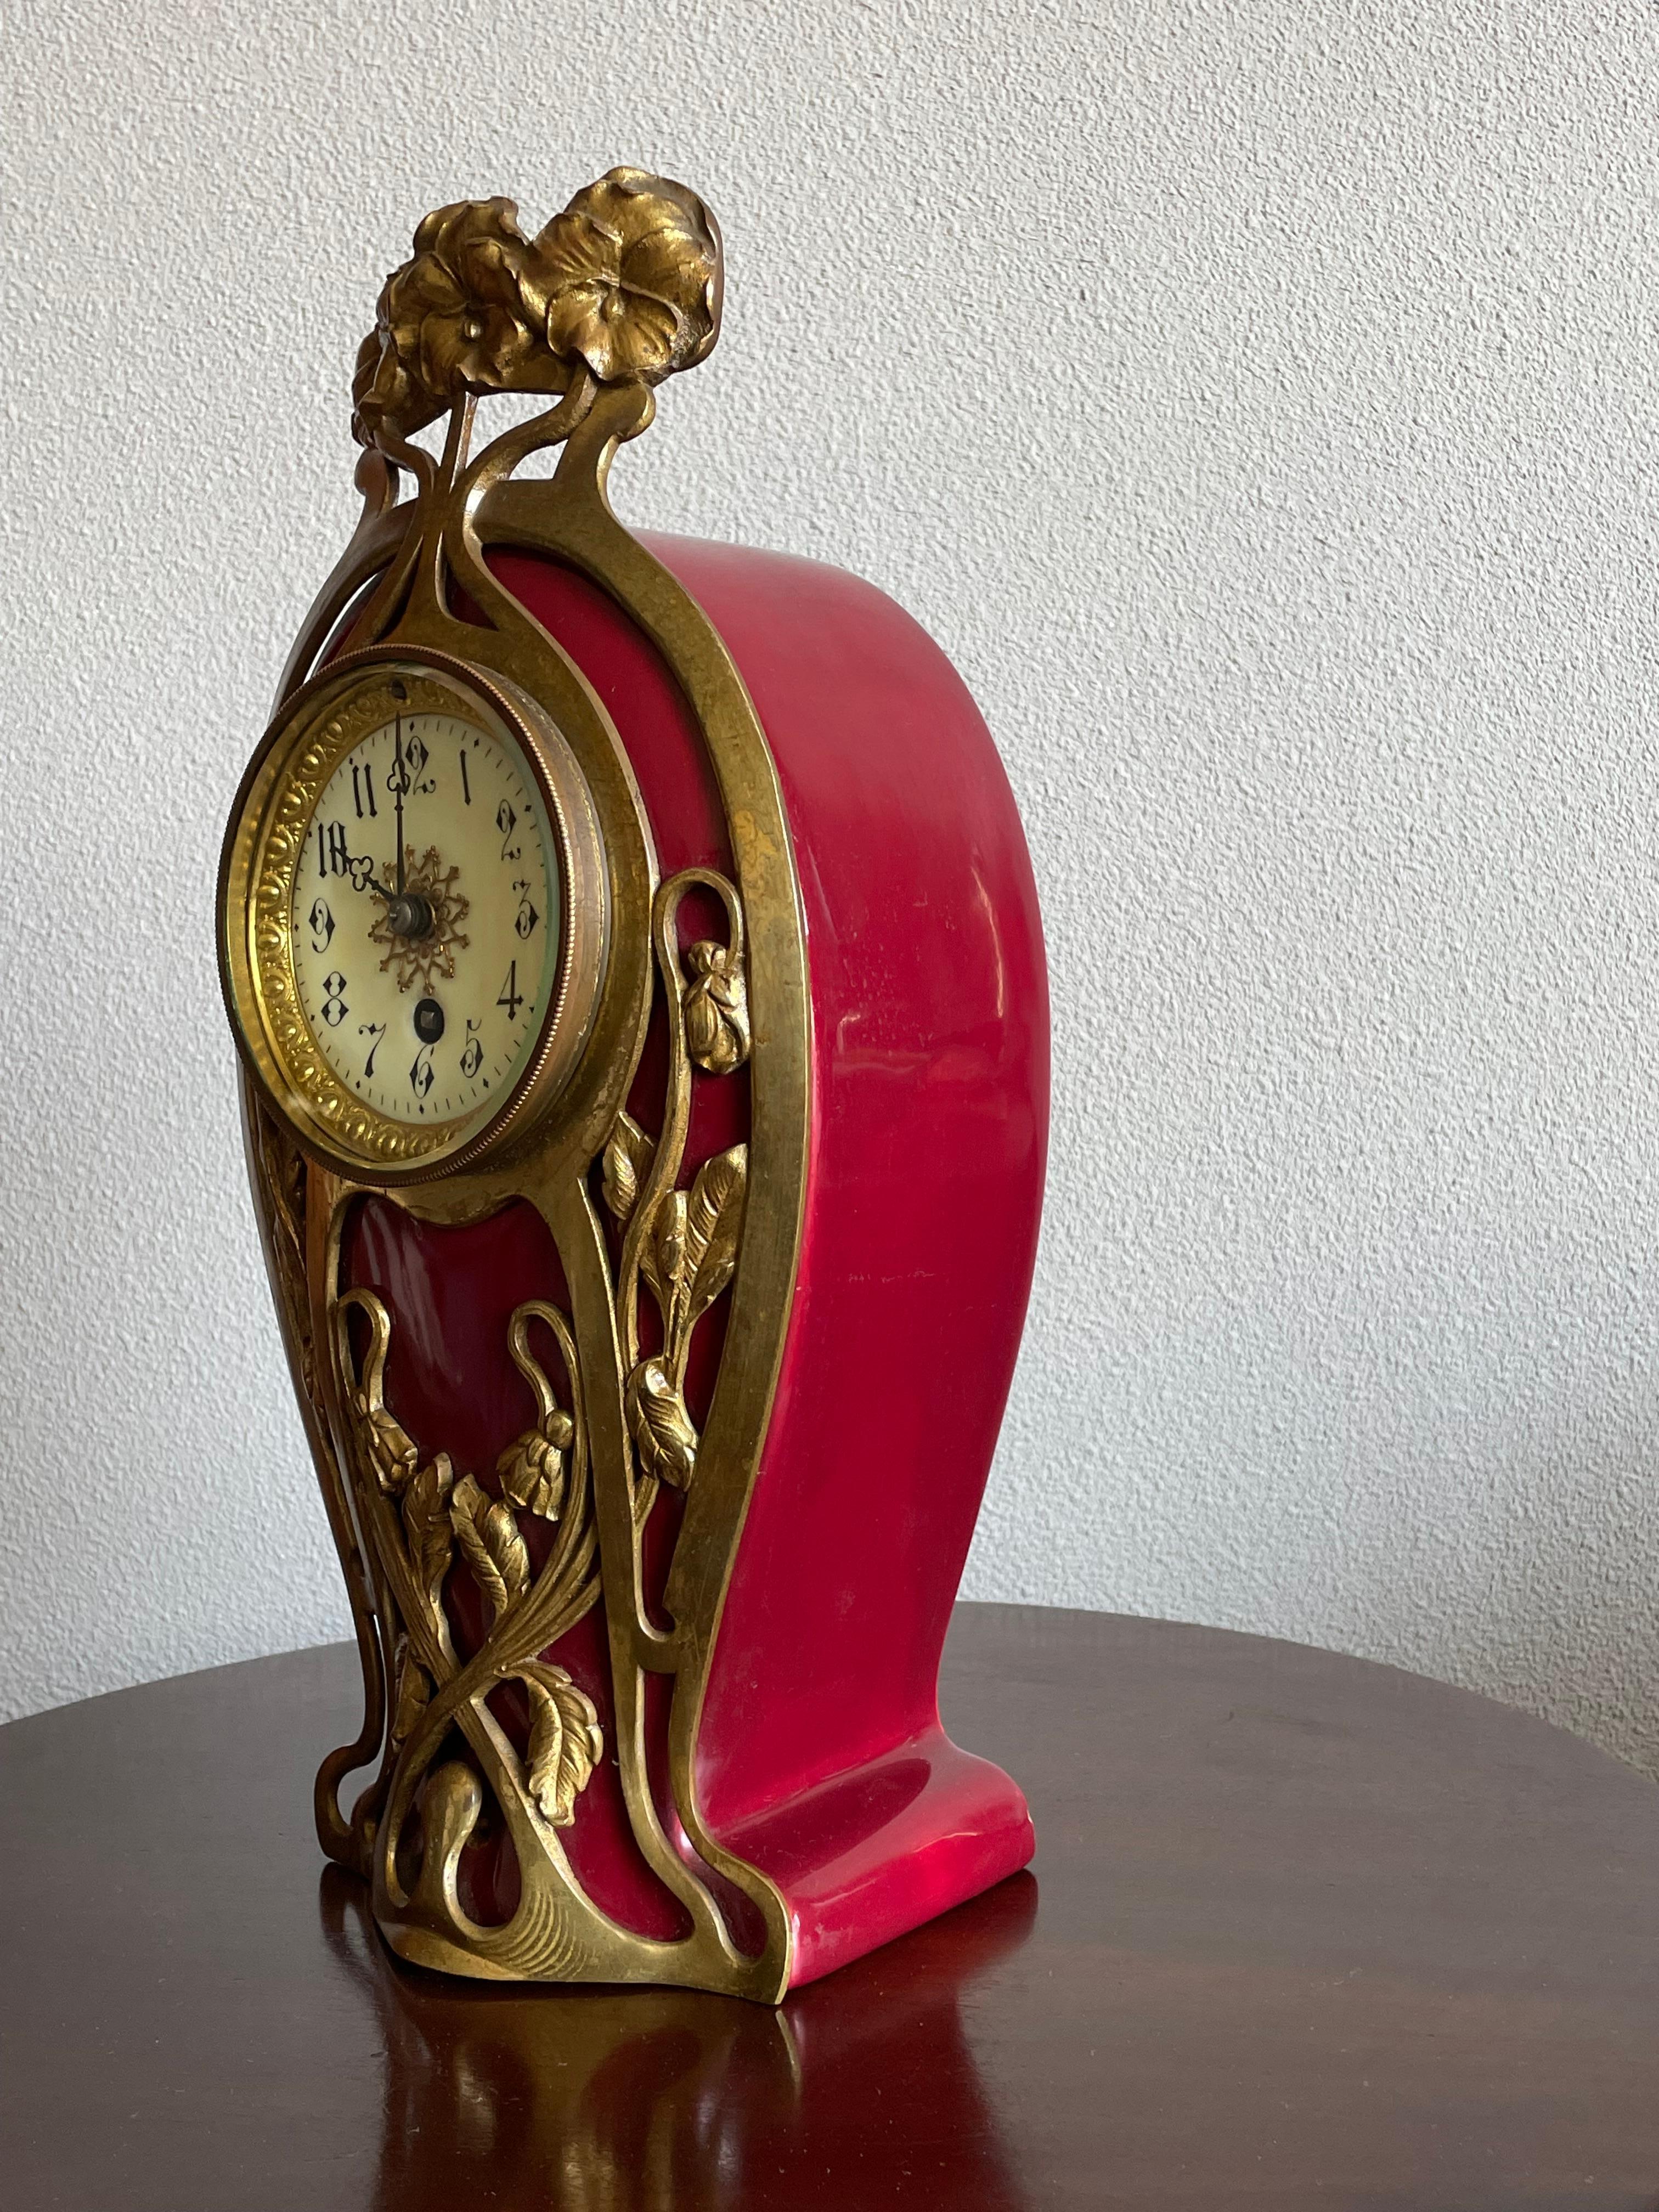 Seltene und wunderschöne antike Majolika-Uhr aus der Zeit des europäischen Jugendstils.

Wenn Sie seltene Arts & Crafts Antiquitäten im Allgemeinen und wunderbare Uhren im Besonderen mögen, dann könnte diese handgefertigte Tischuhr aus der Zeit um